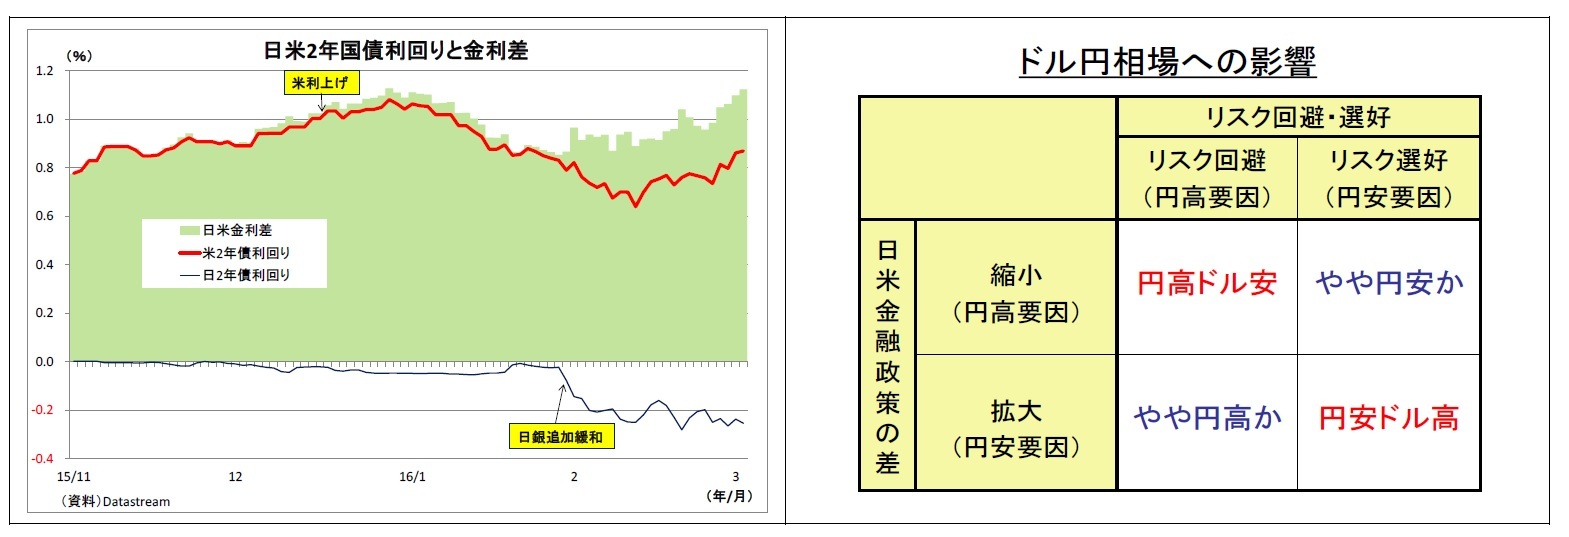 日米2年国債利回りと金利差/ドル円相場への影響